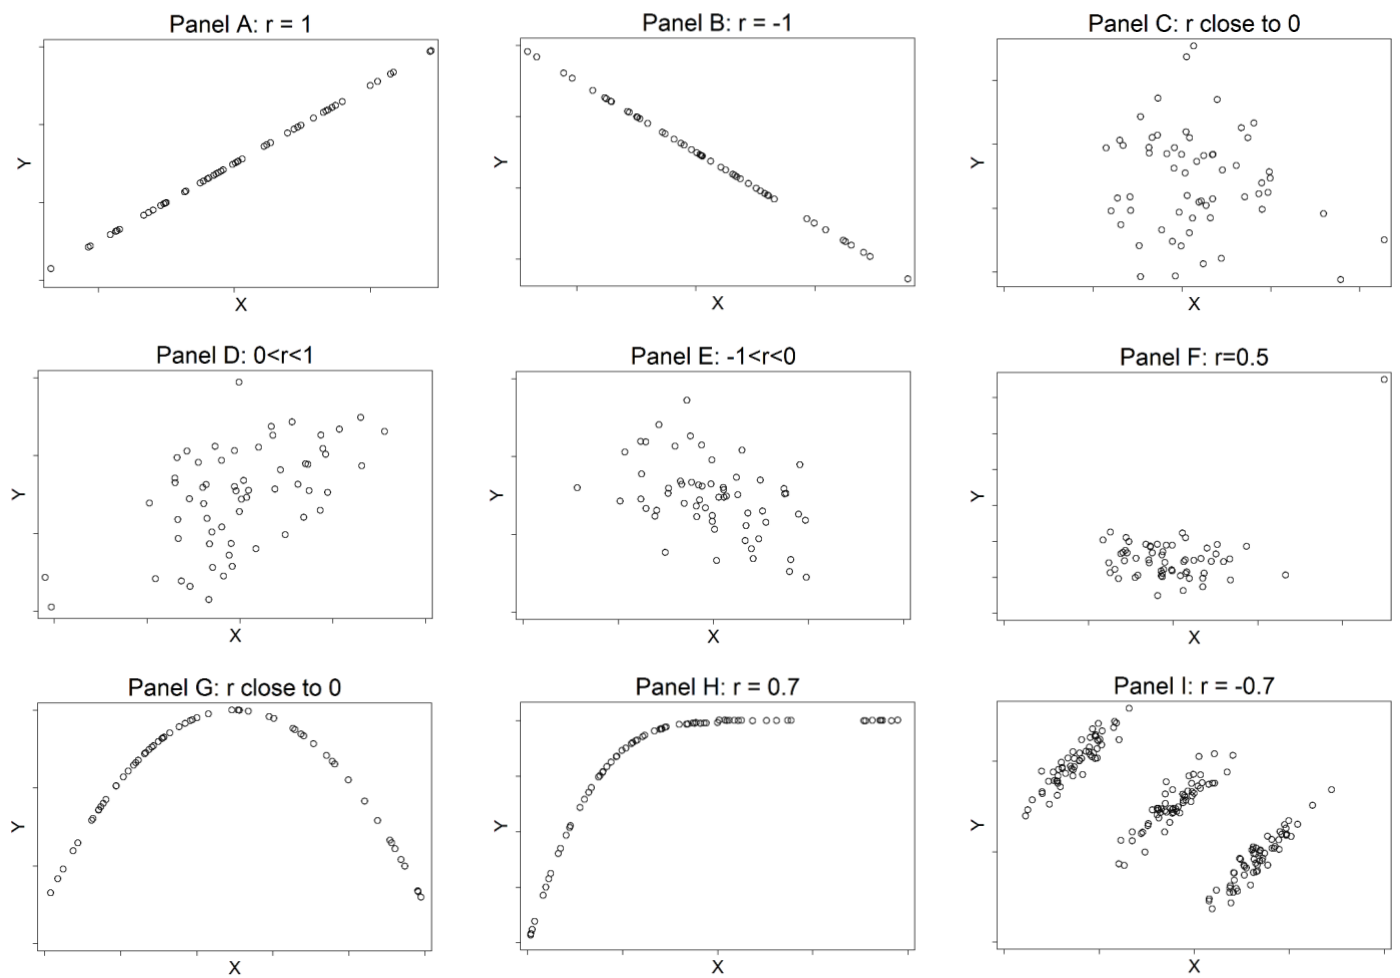 Examples of Peason correlation coefficients